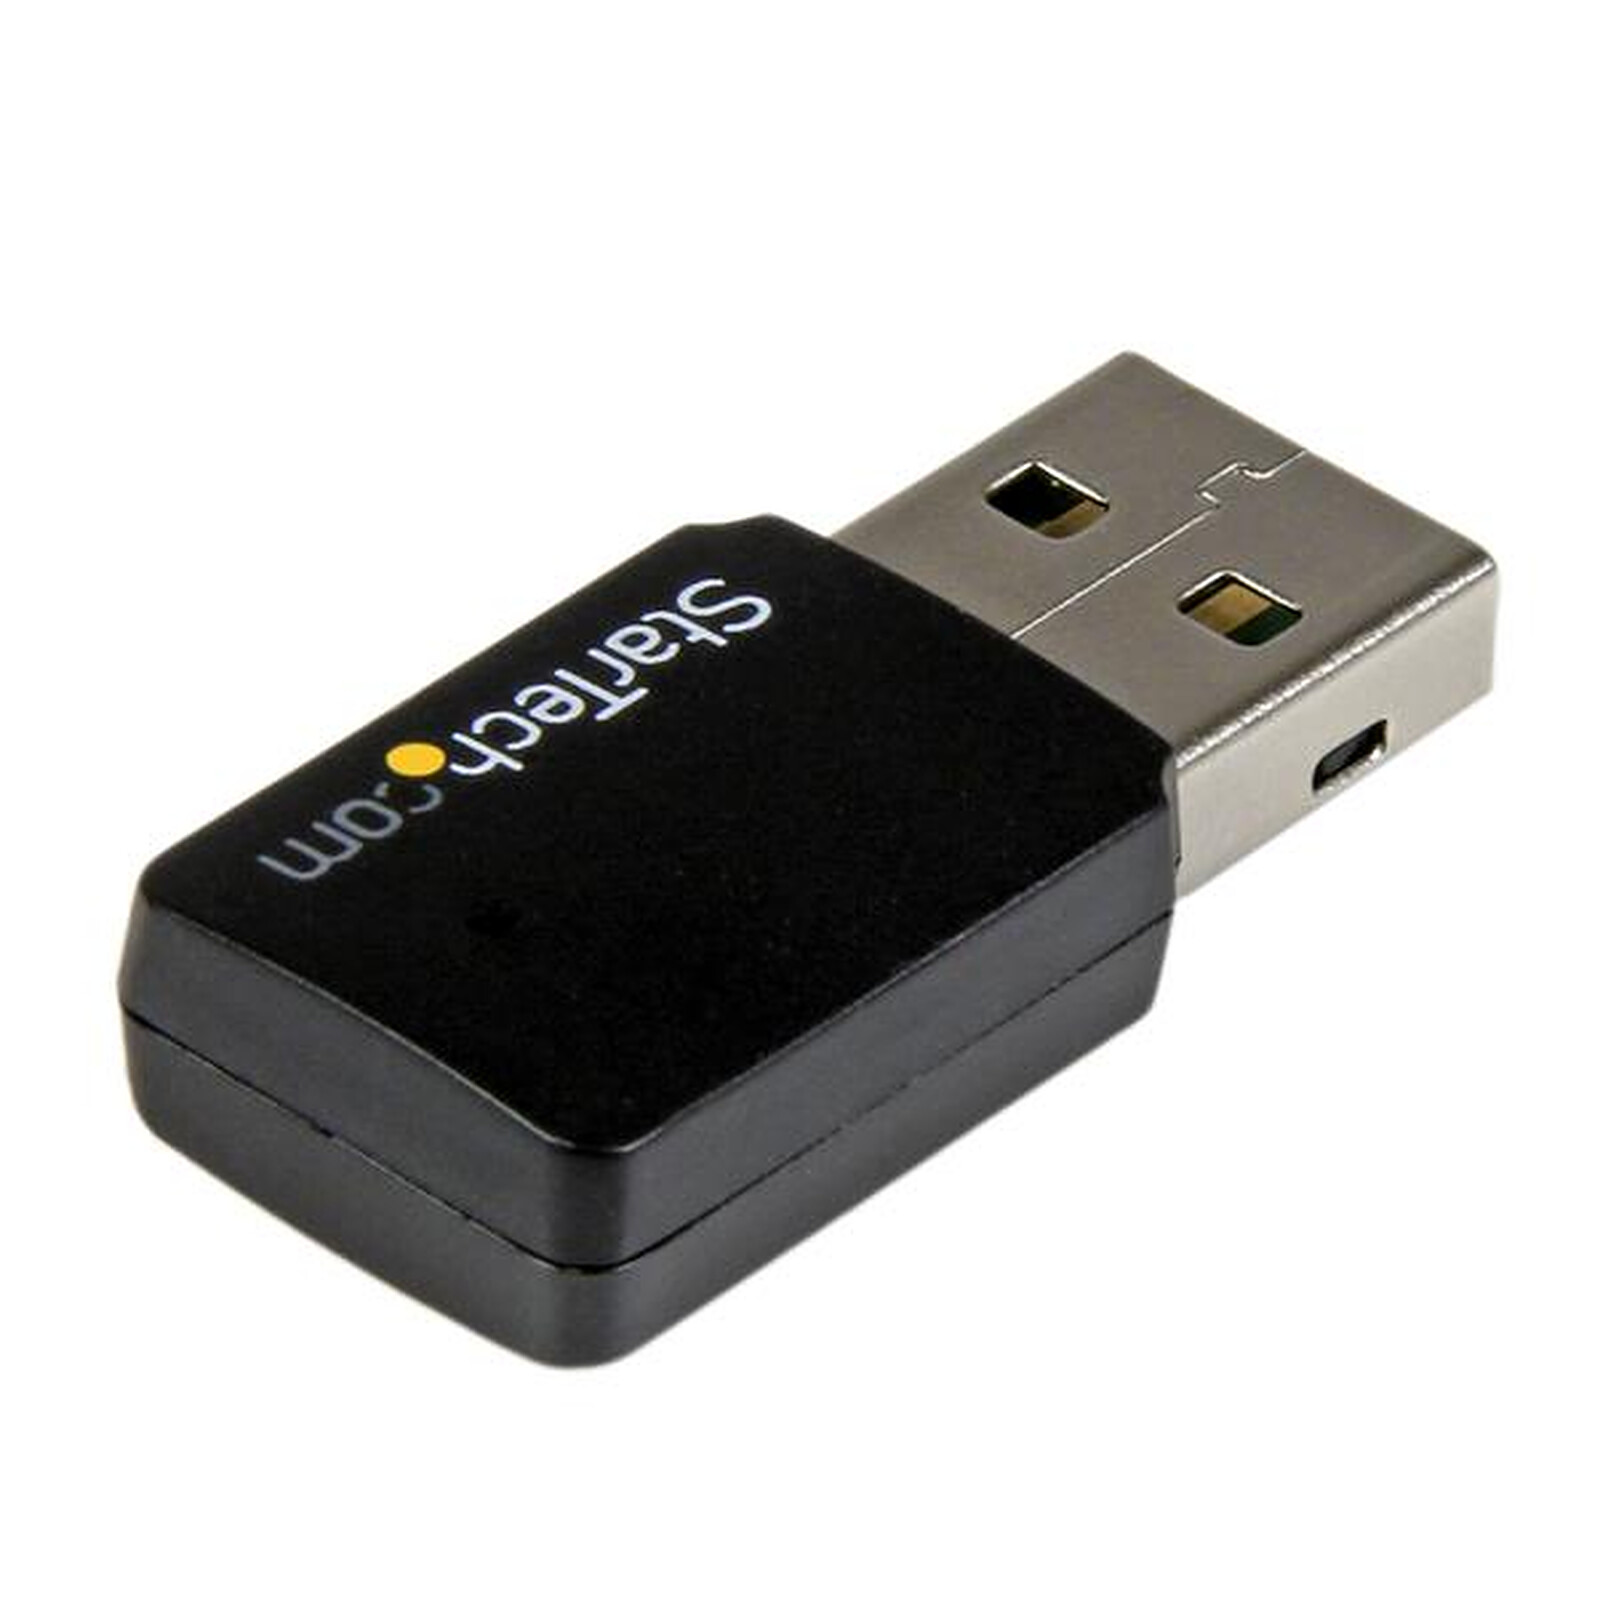 Adaptador WiFi USB 2.0 de doble banda - A6150